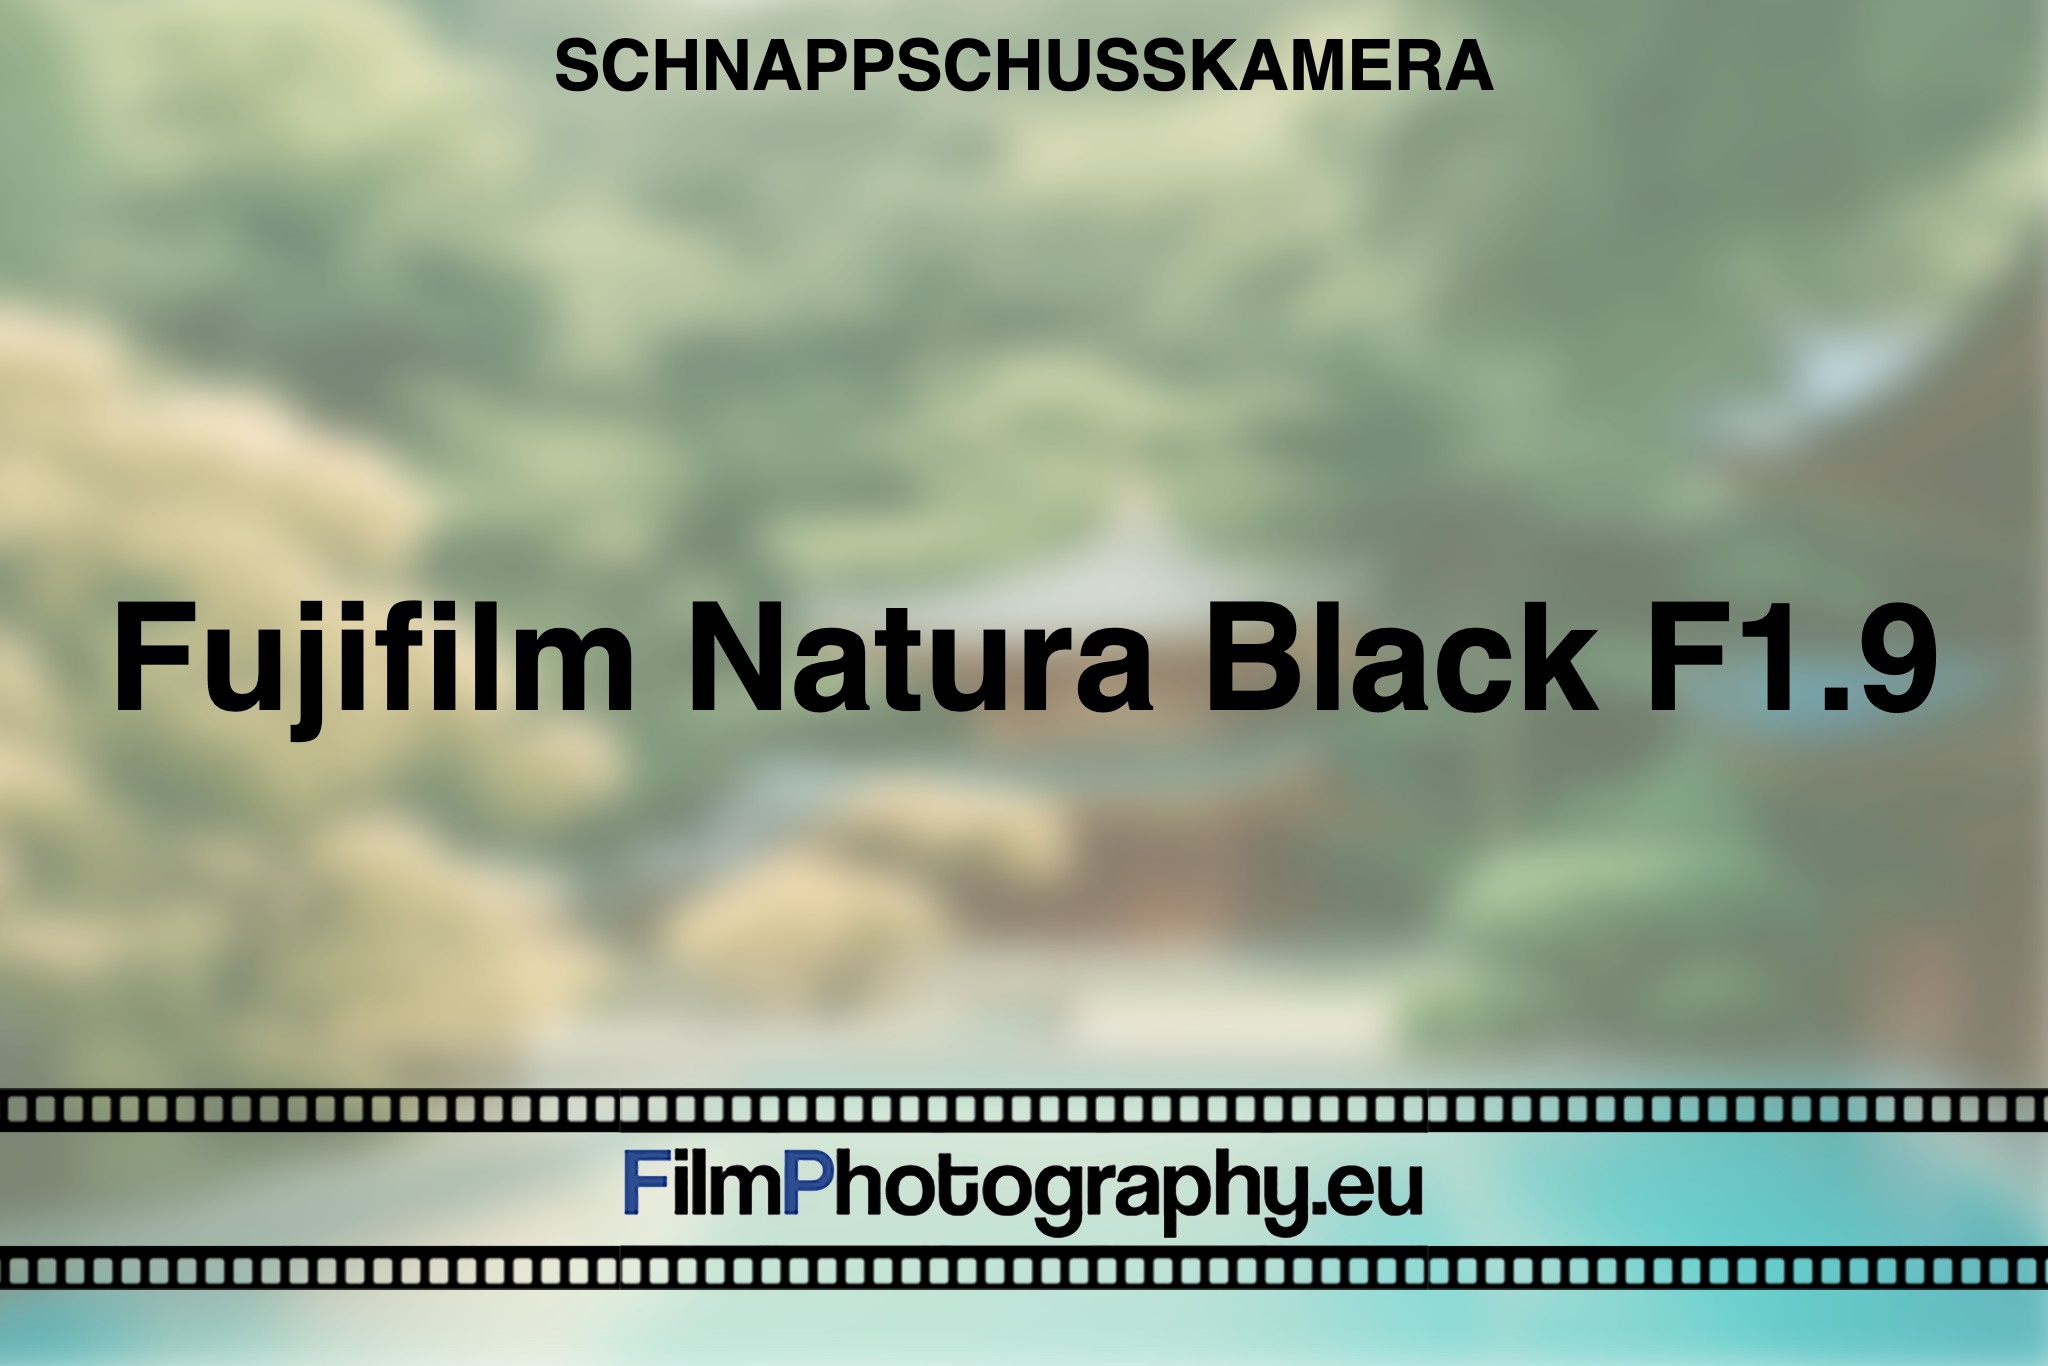 fujifilm-natura-black-f1-9-schnappschusskamera-bnv